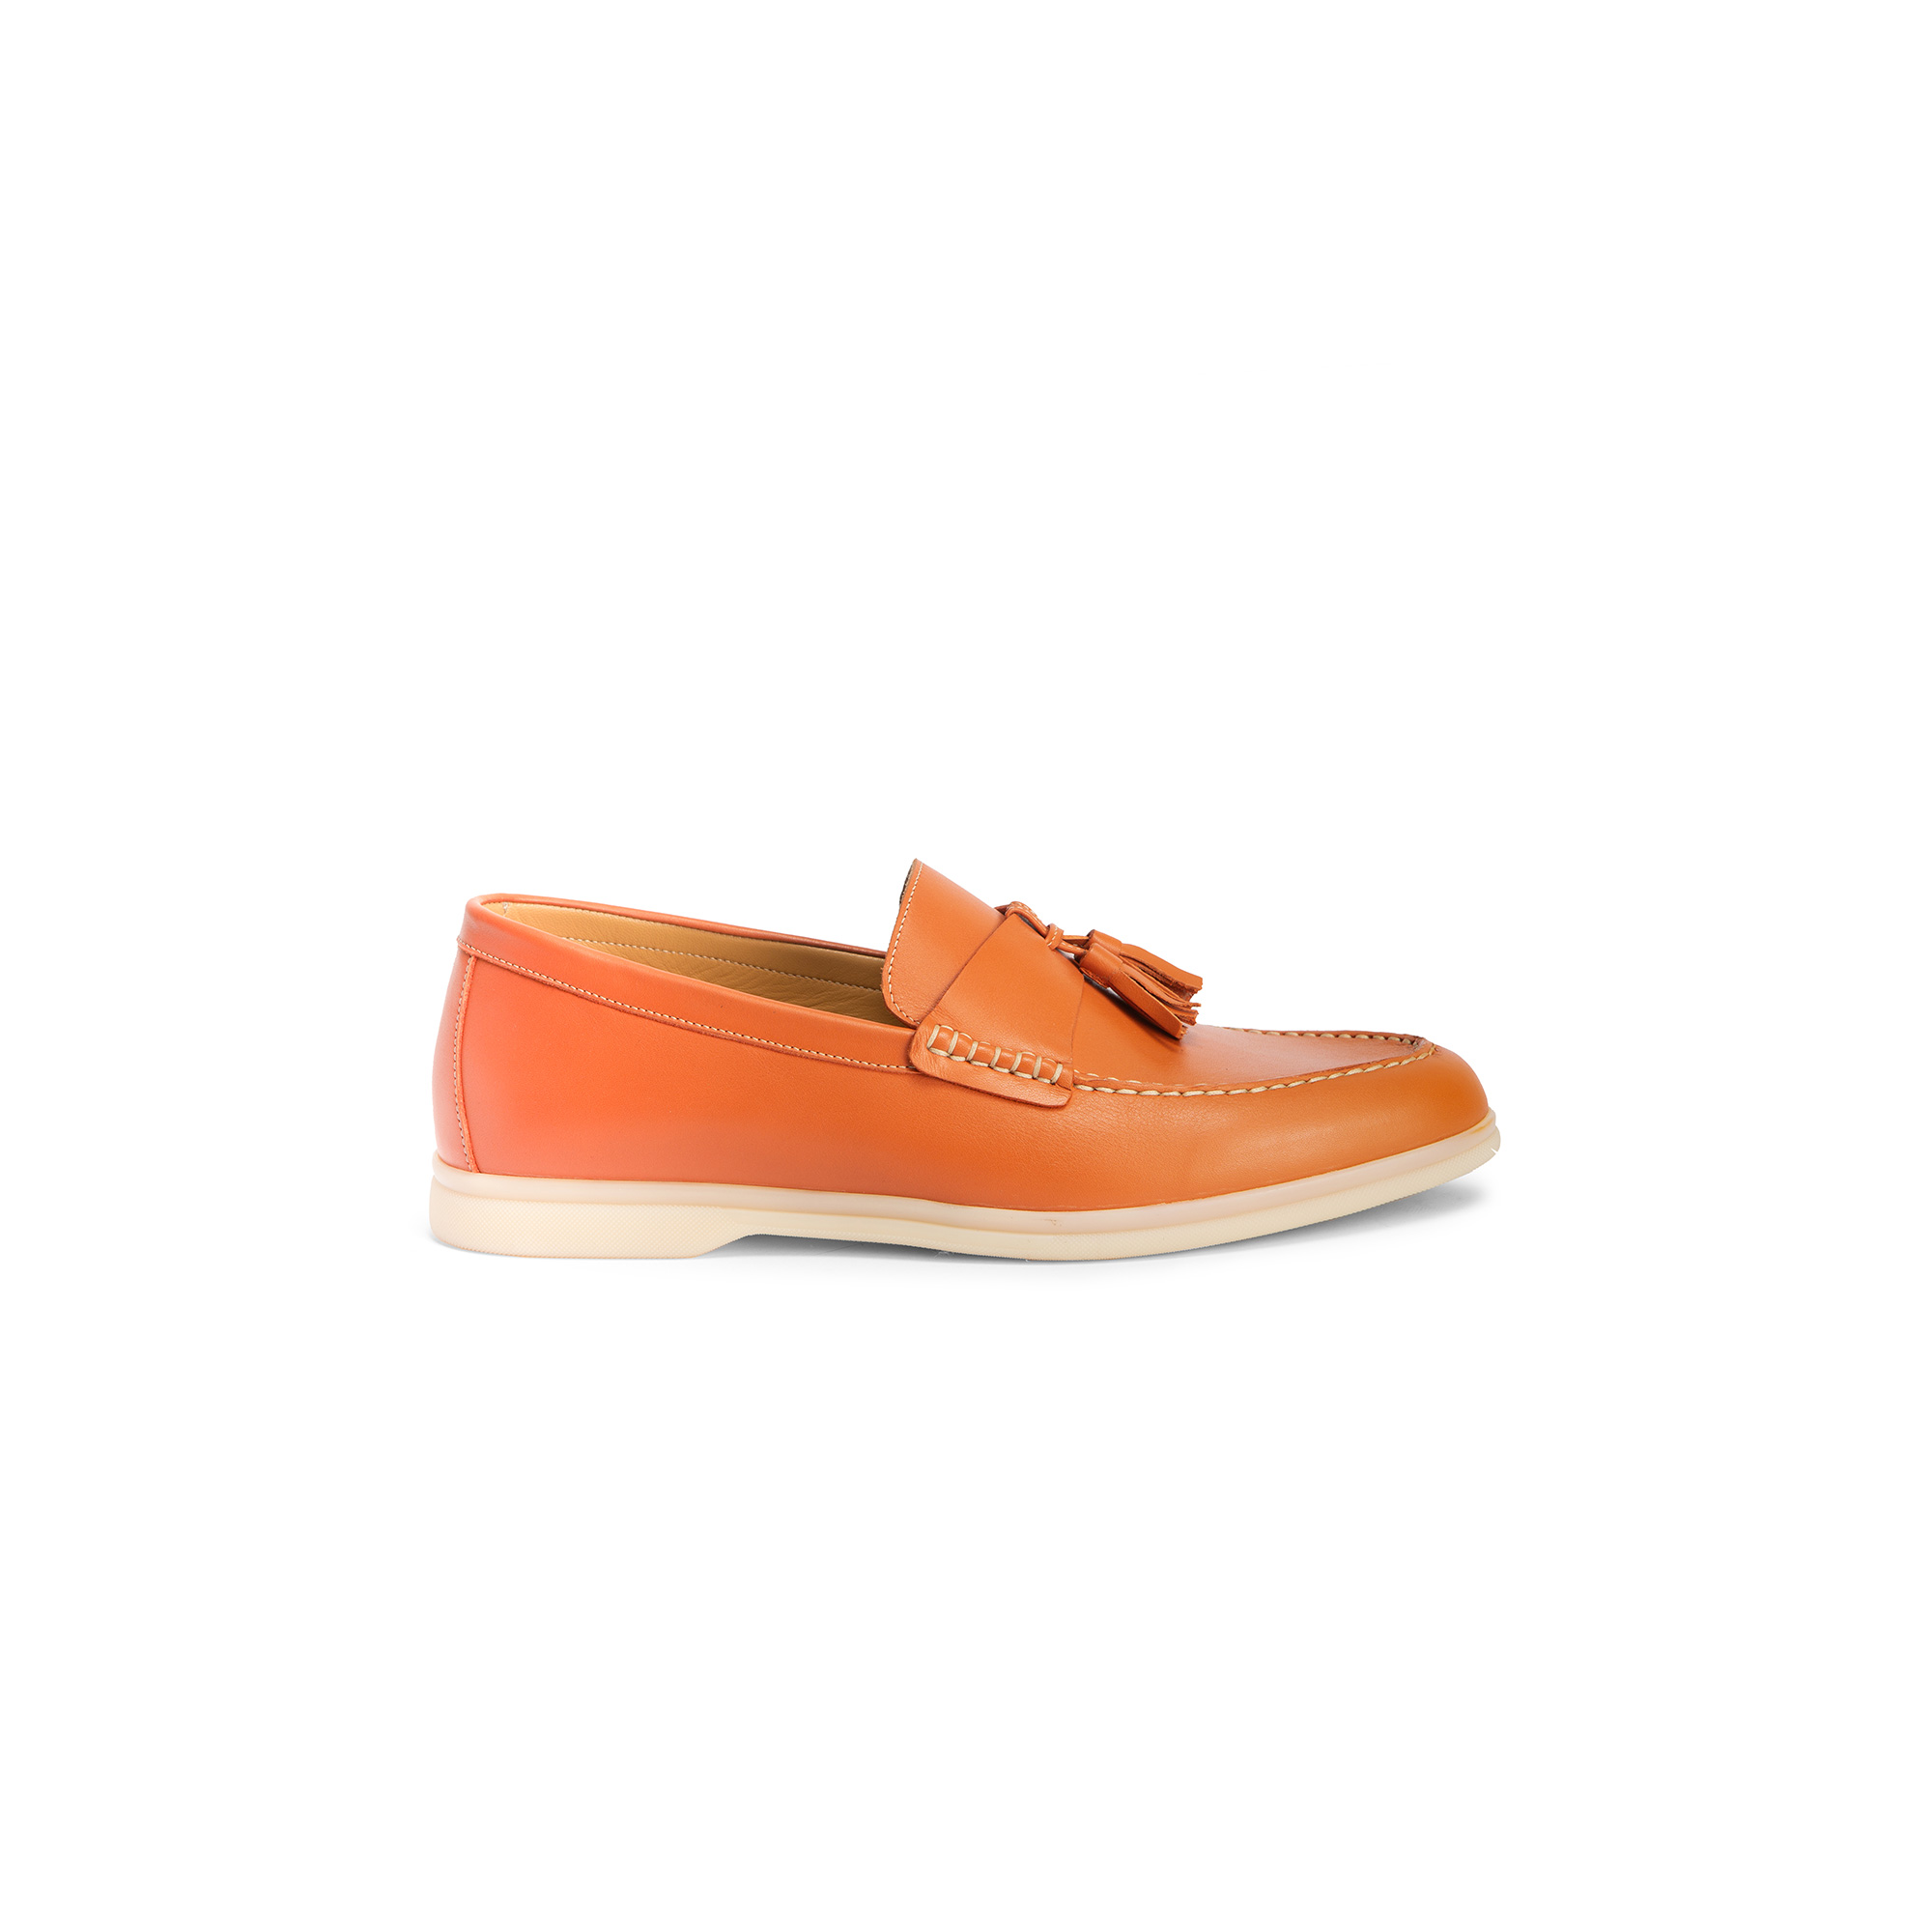 Mocassino esterno vitello arancio - Farfalla italian slippers